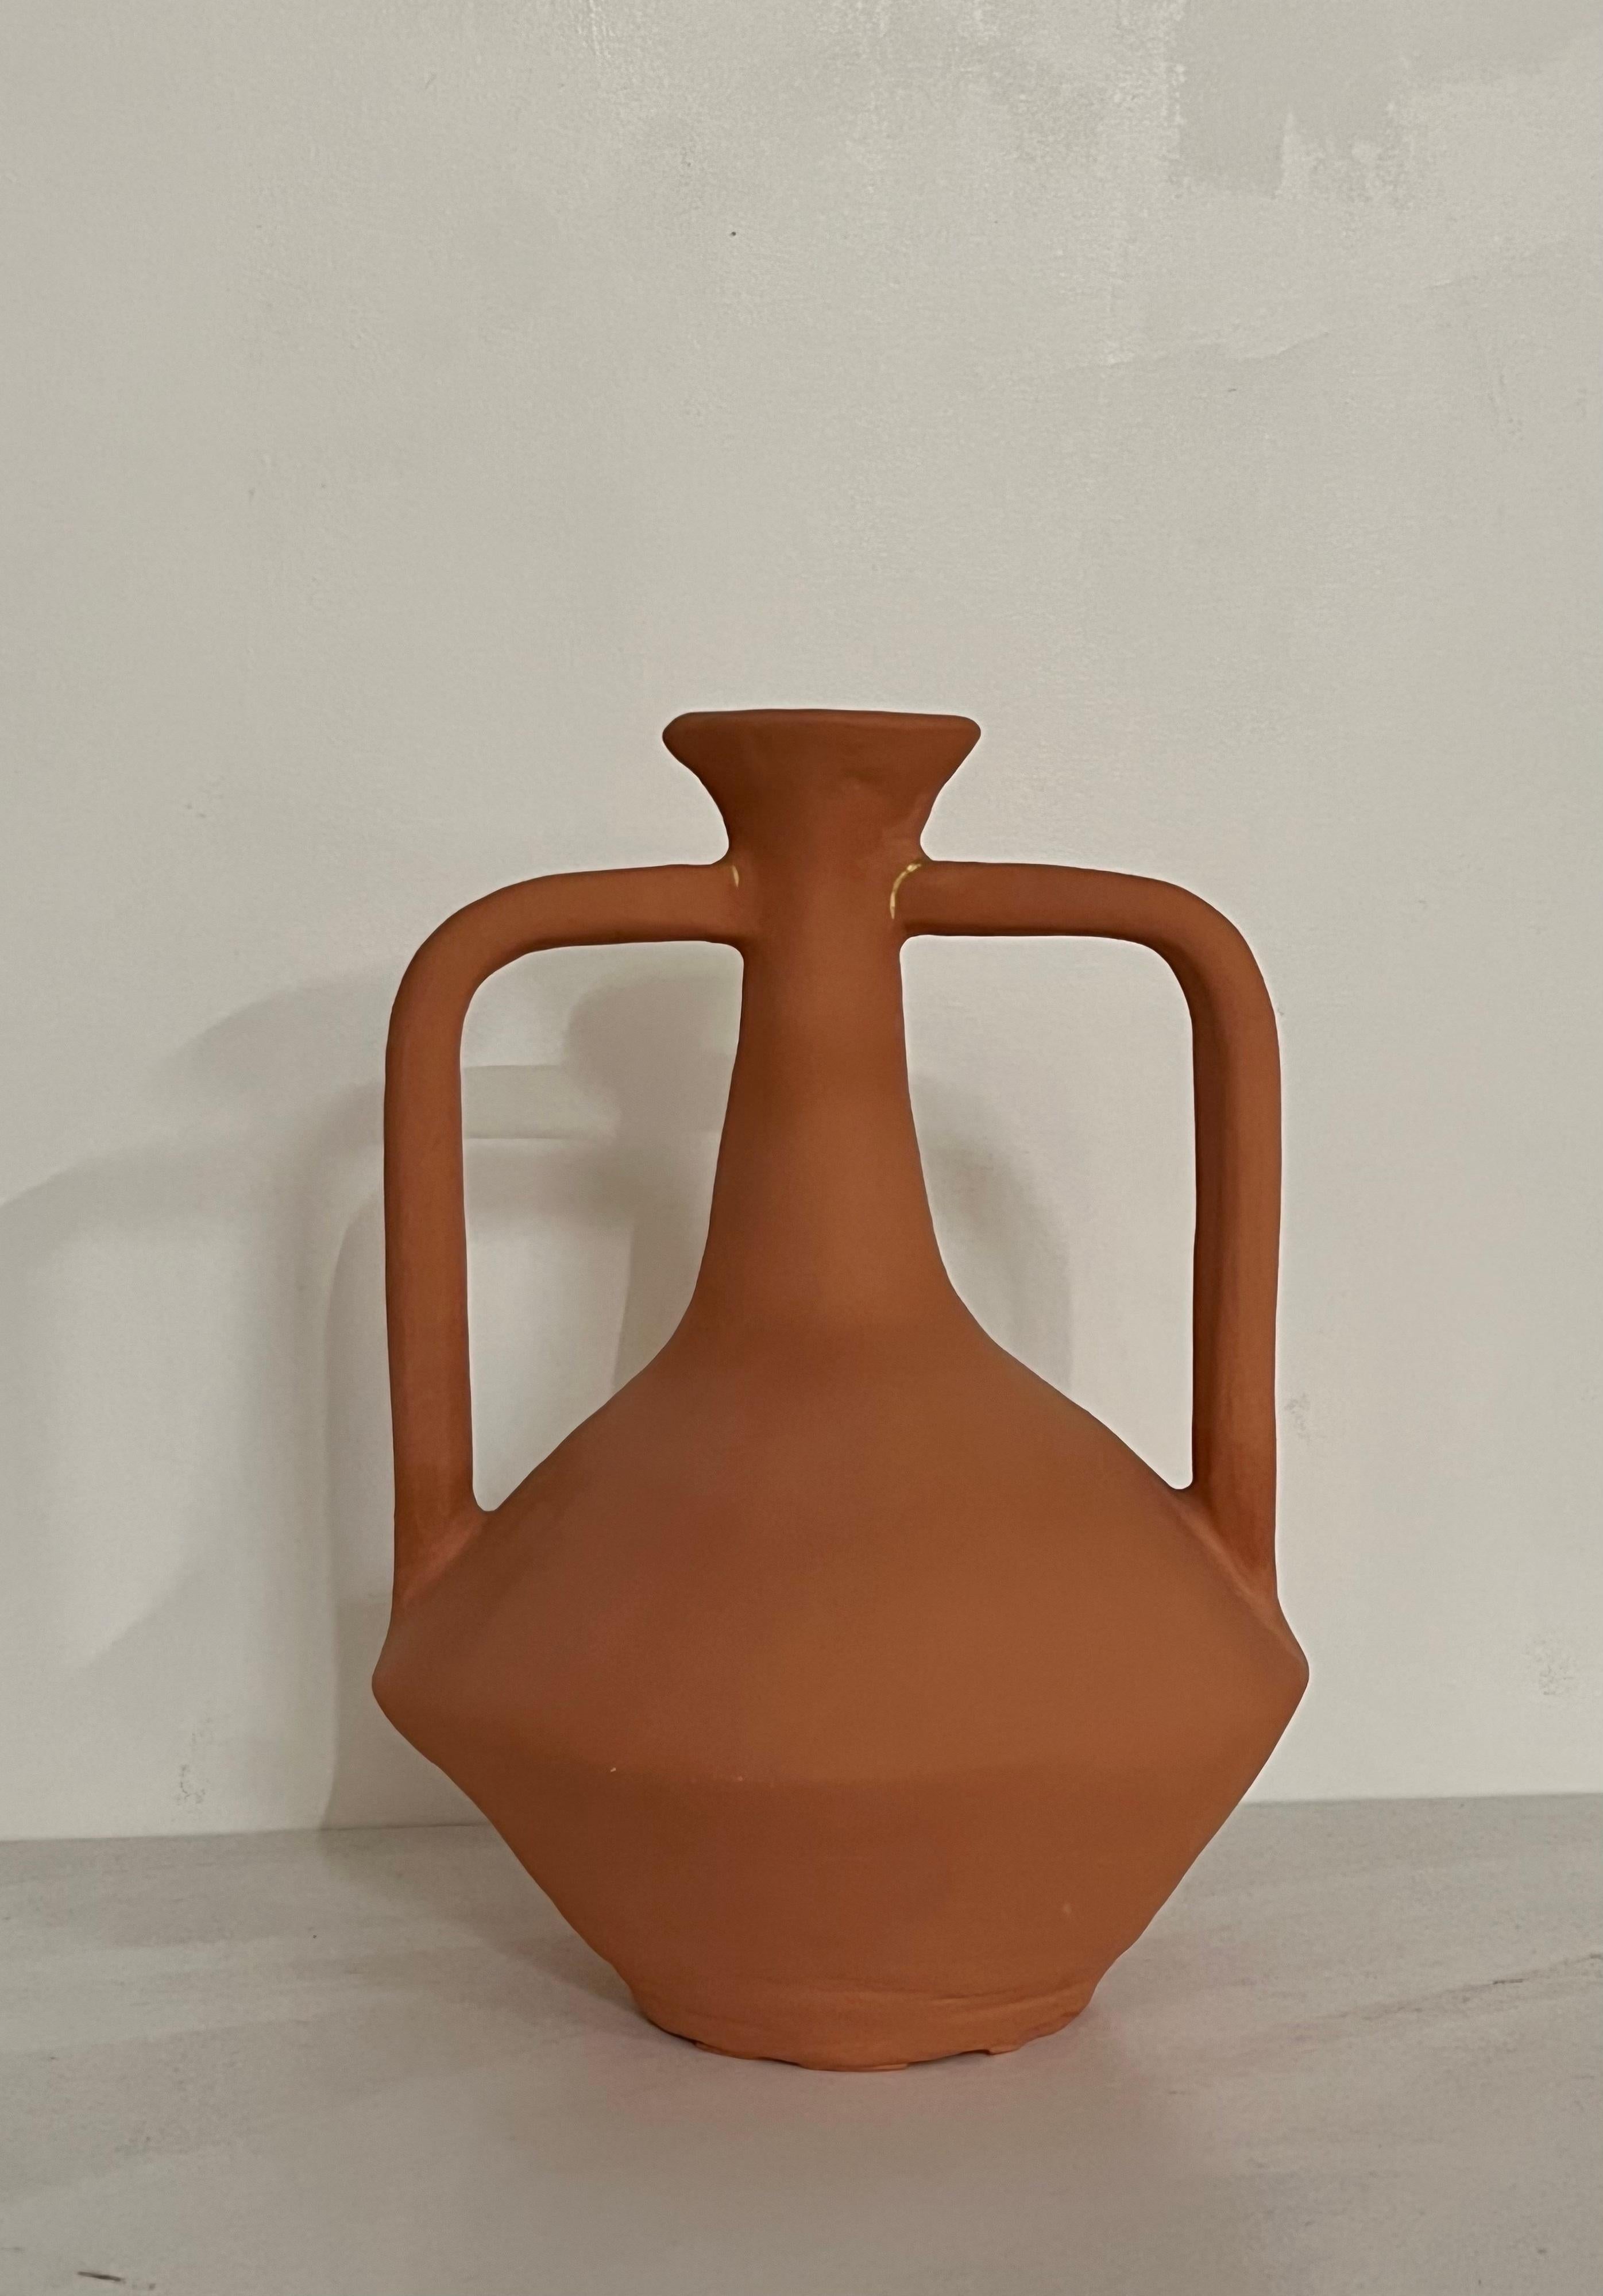 Terrakotta-Vase mit kurzem Hals von Solem Ceramics
Abmessungen: Ø 20,5 x H 30,5 cm.
MATERIALIEN: Rotes Steingut, Terrakotta-Schlicker.

Solems Arbeit basiert auf Erinnerungen an die Architektur und die Gemeinschaft in Südostasien und erforscht